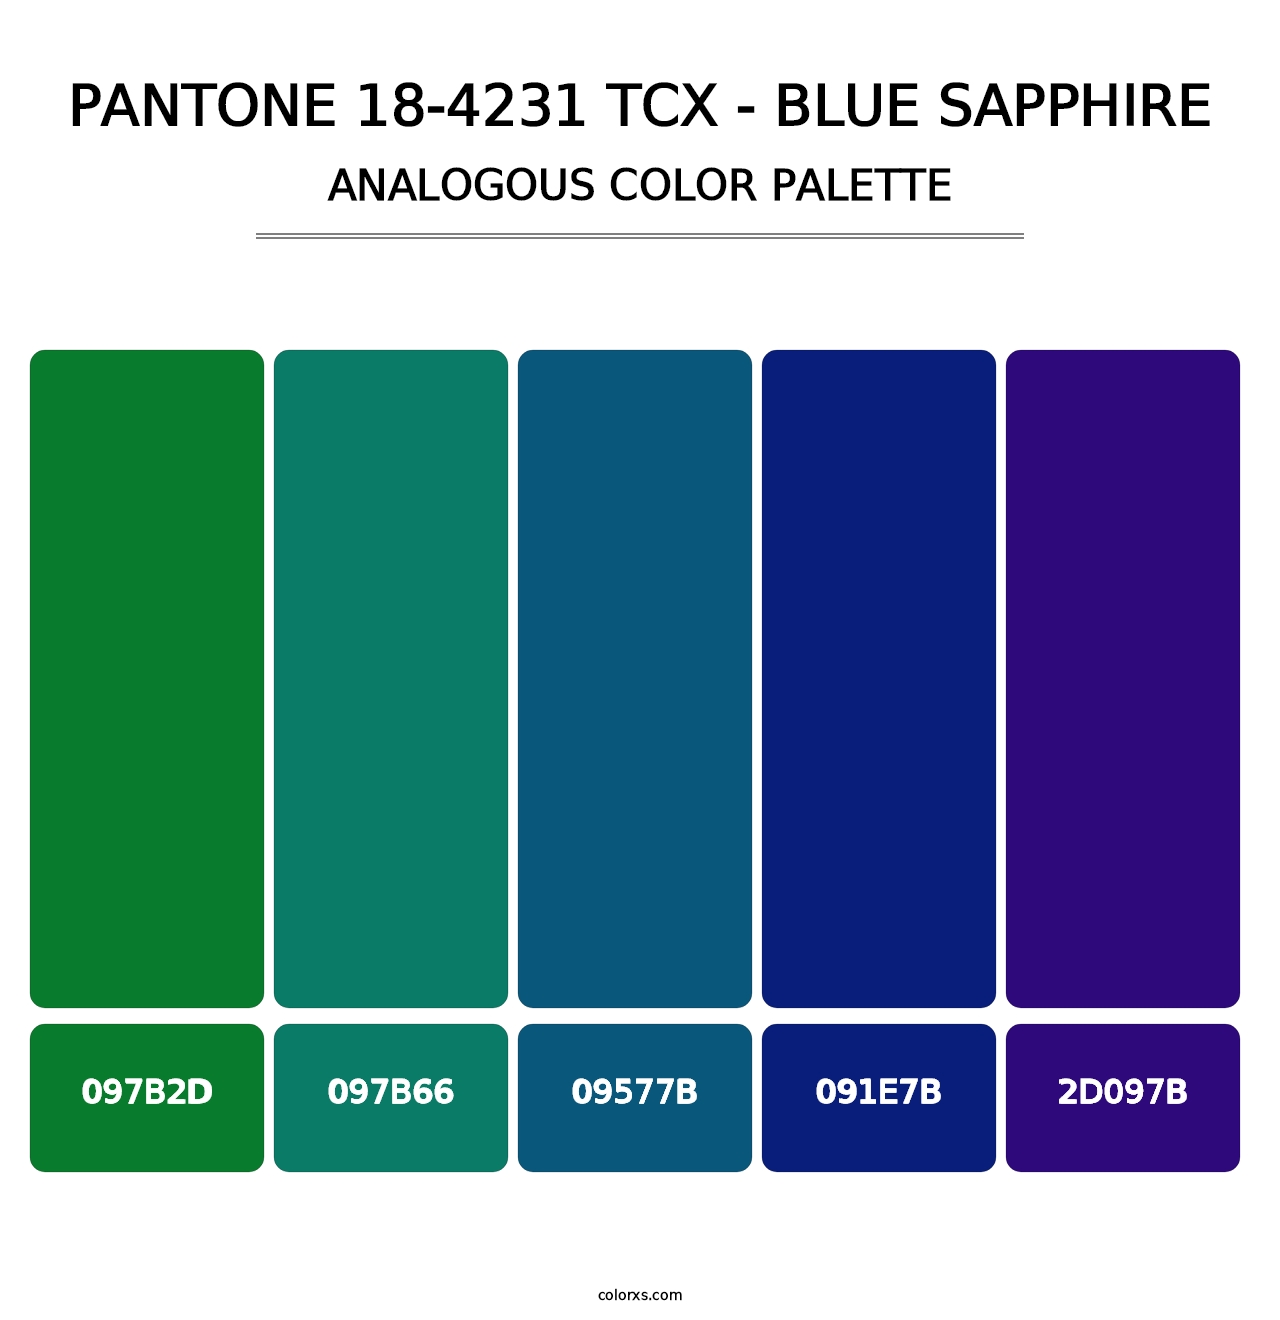 PANTONE 18-4231 TCX - Blue Sapphire - Analogous Color Palette